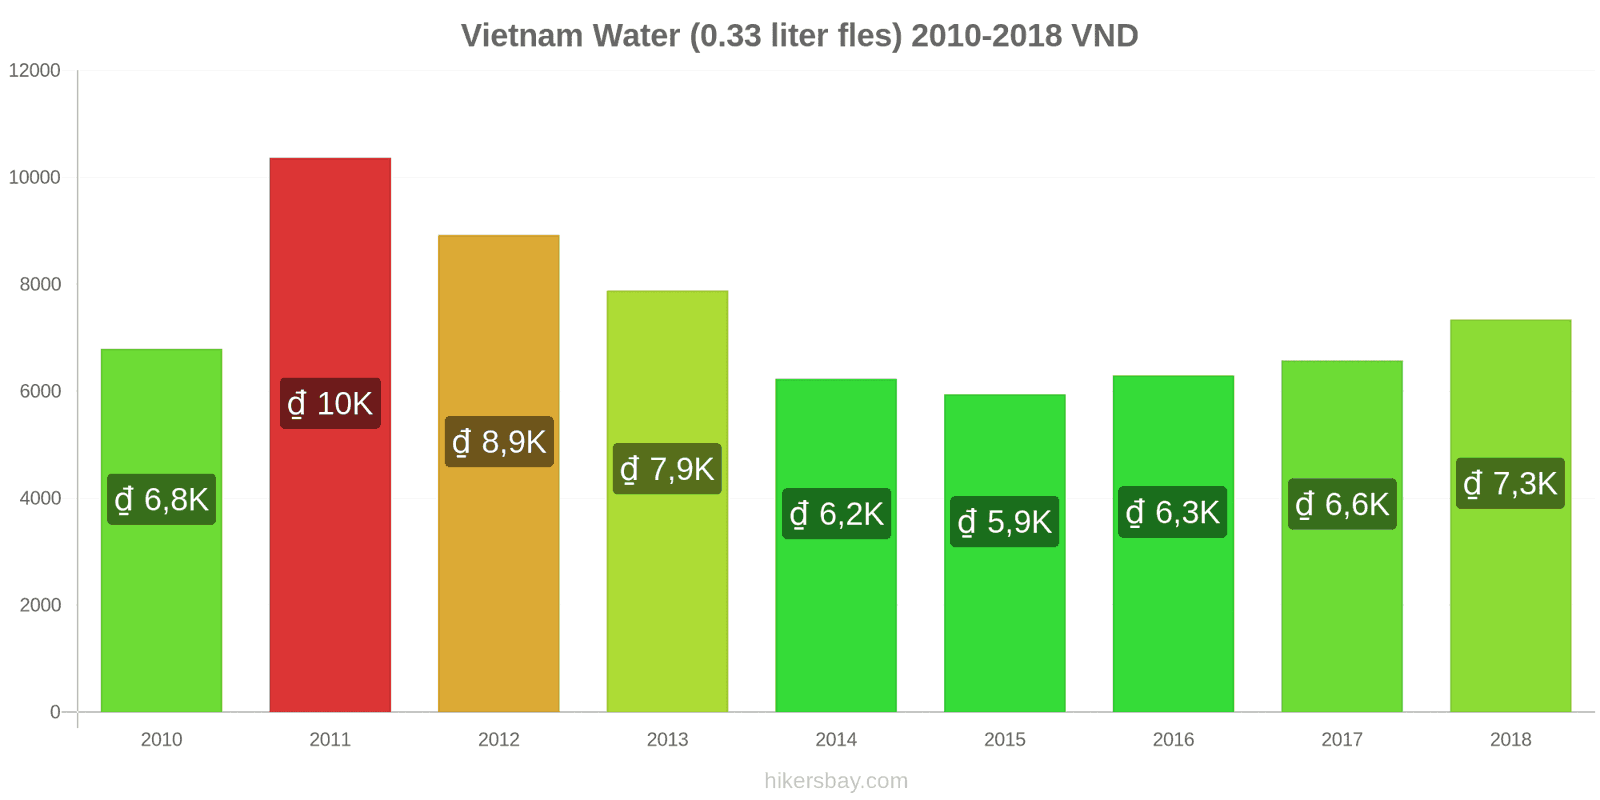 Vietnam prijswijzigingen Water (0.33 liter fles) hikersbay.com